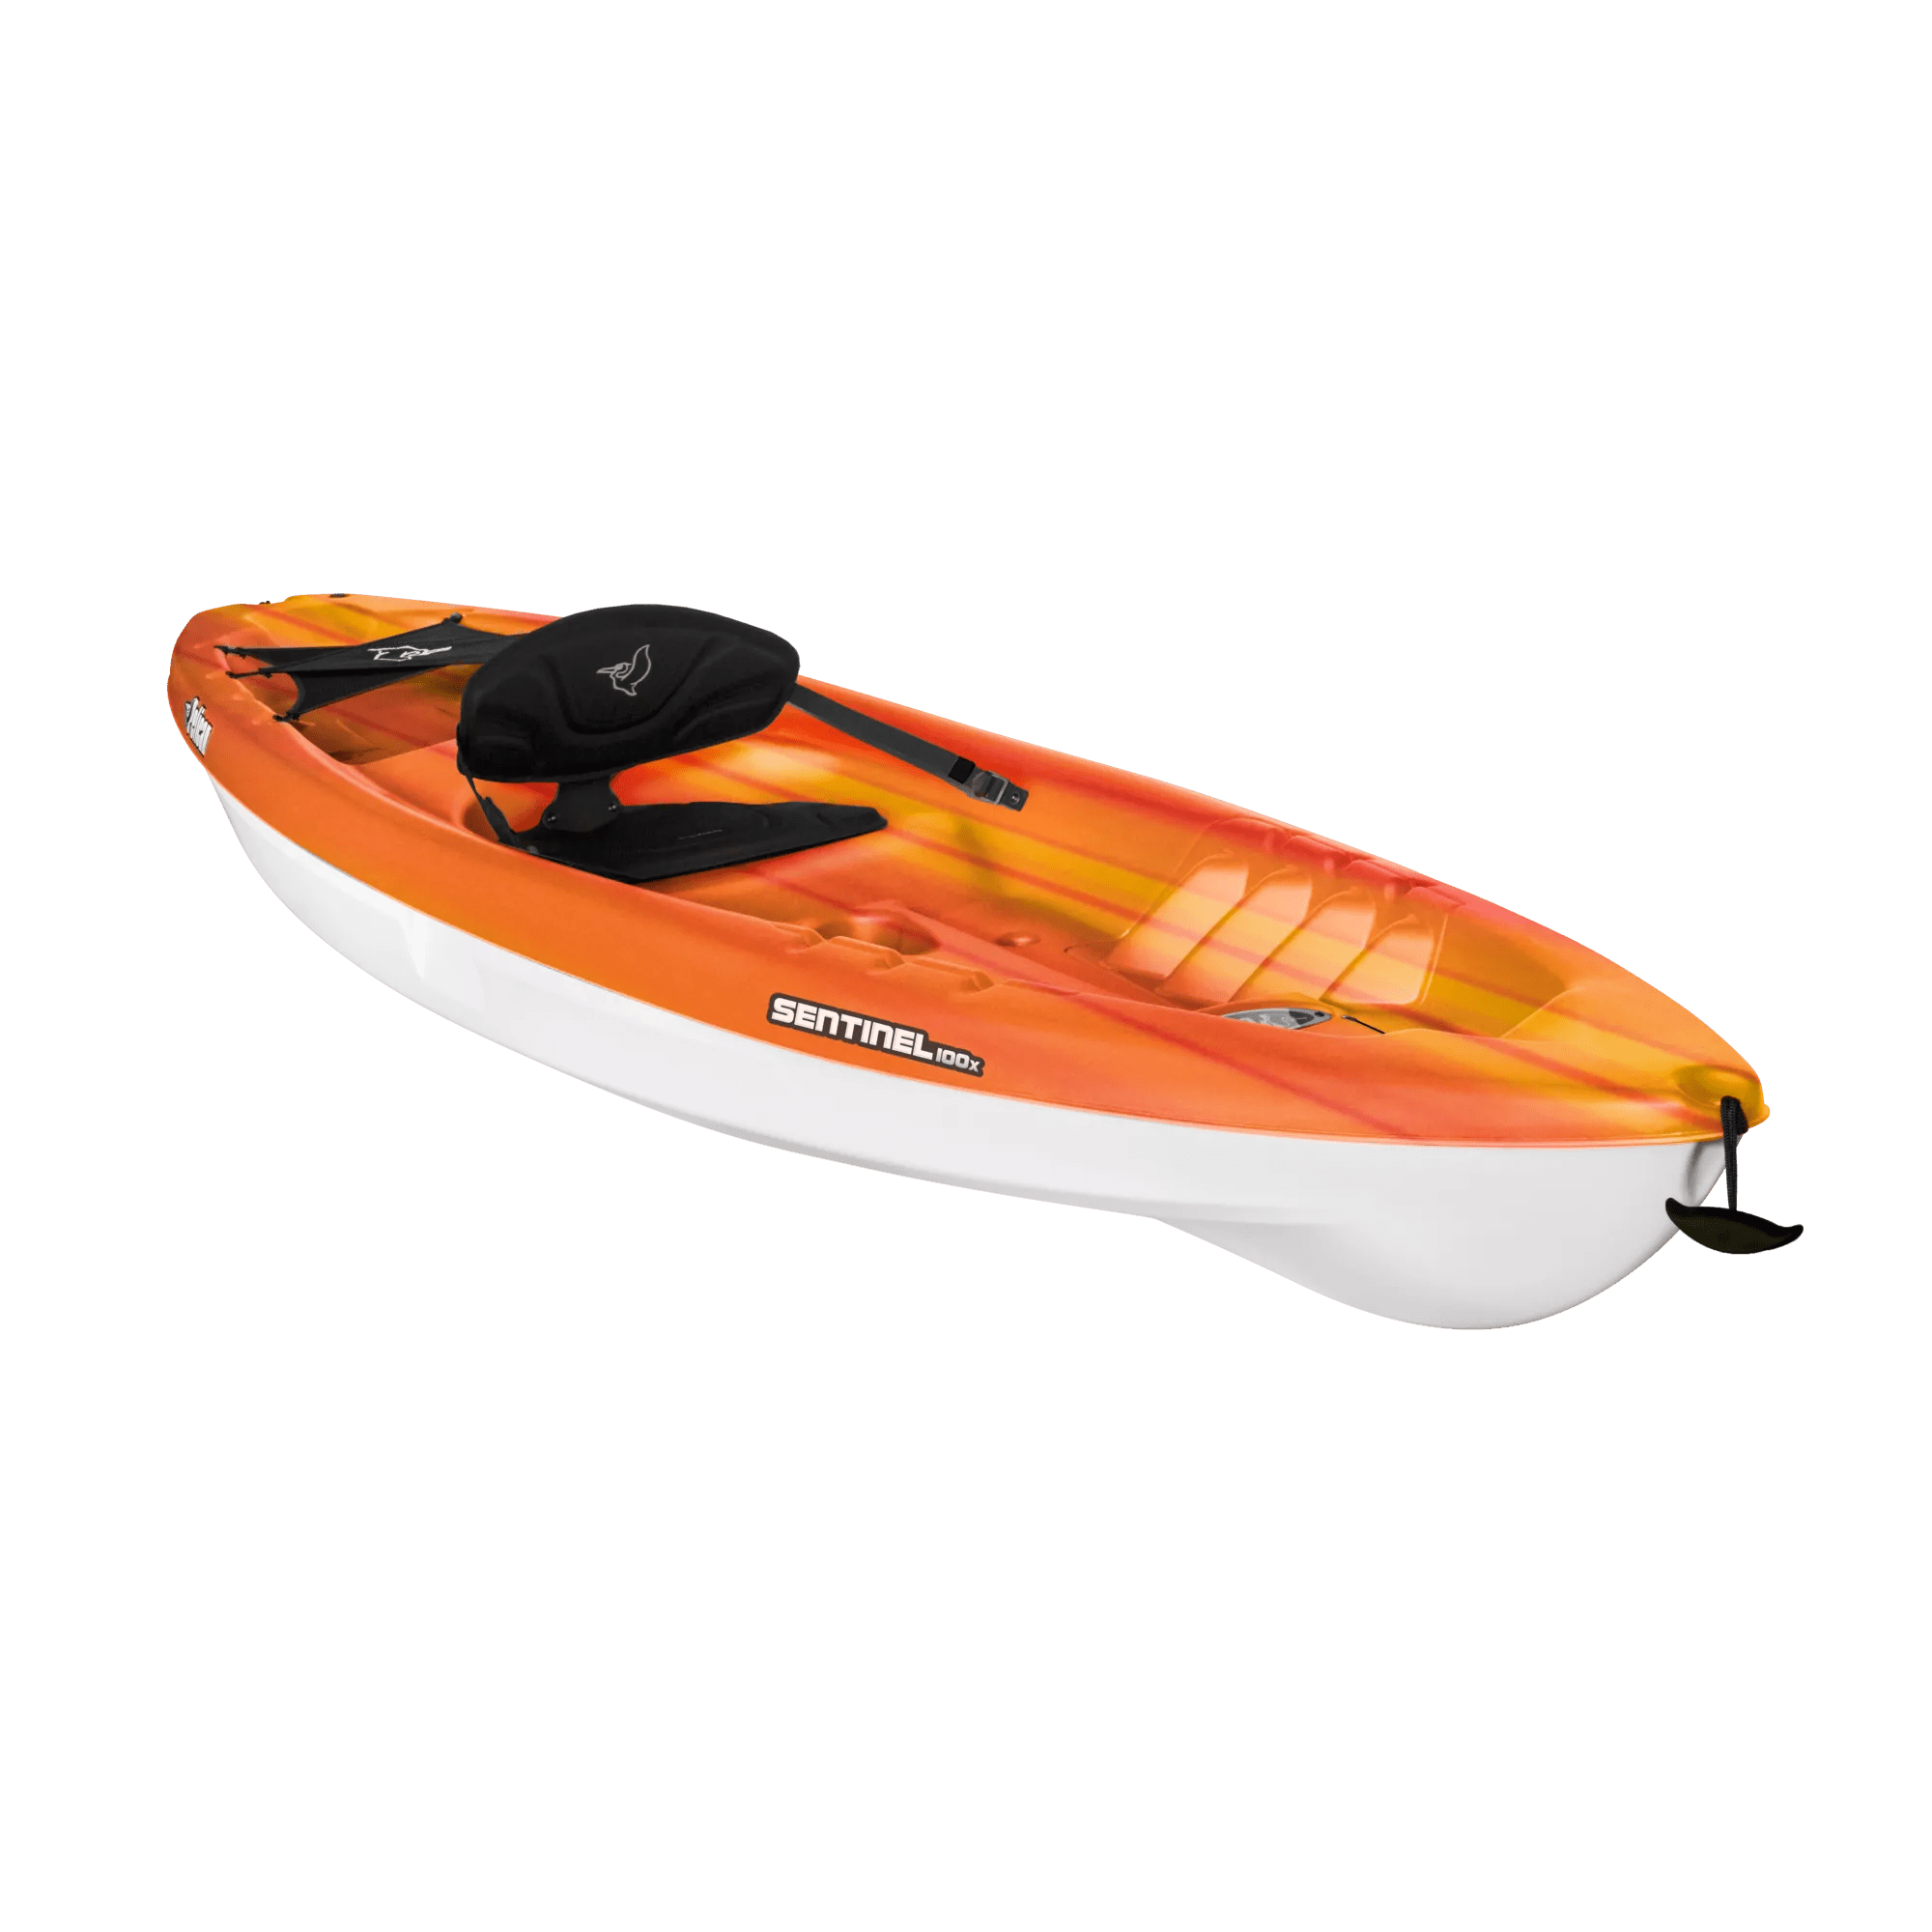 PELICAN - Sentinel 100X Recreational Kayak - Red - KVF10P104-00 - ISO